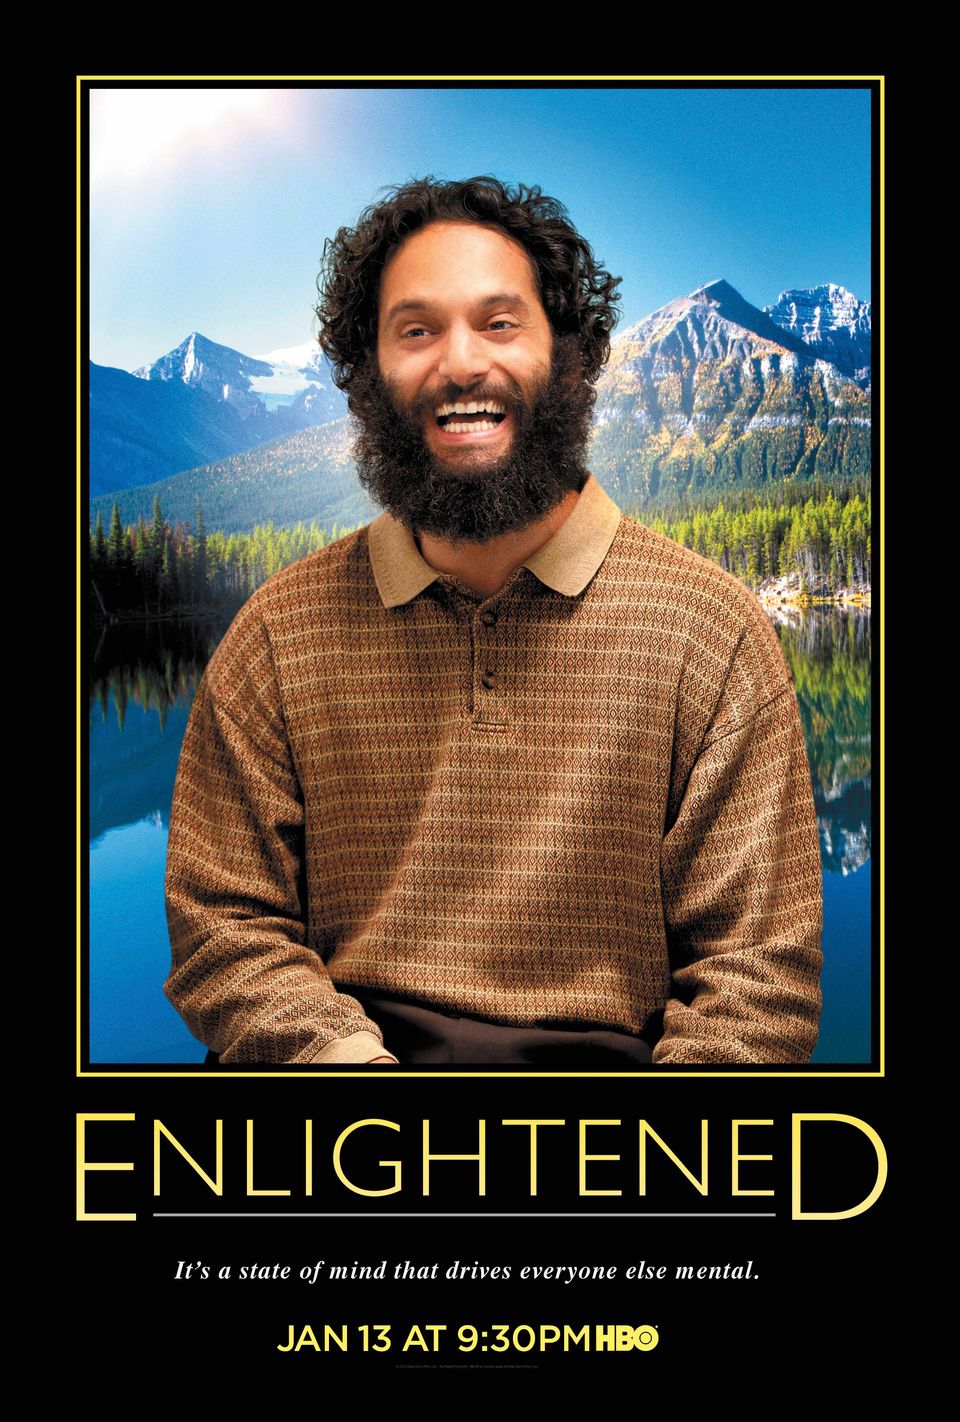 Omar, "Enlightened"